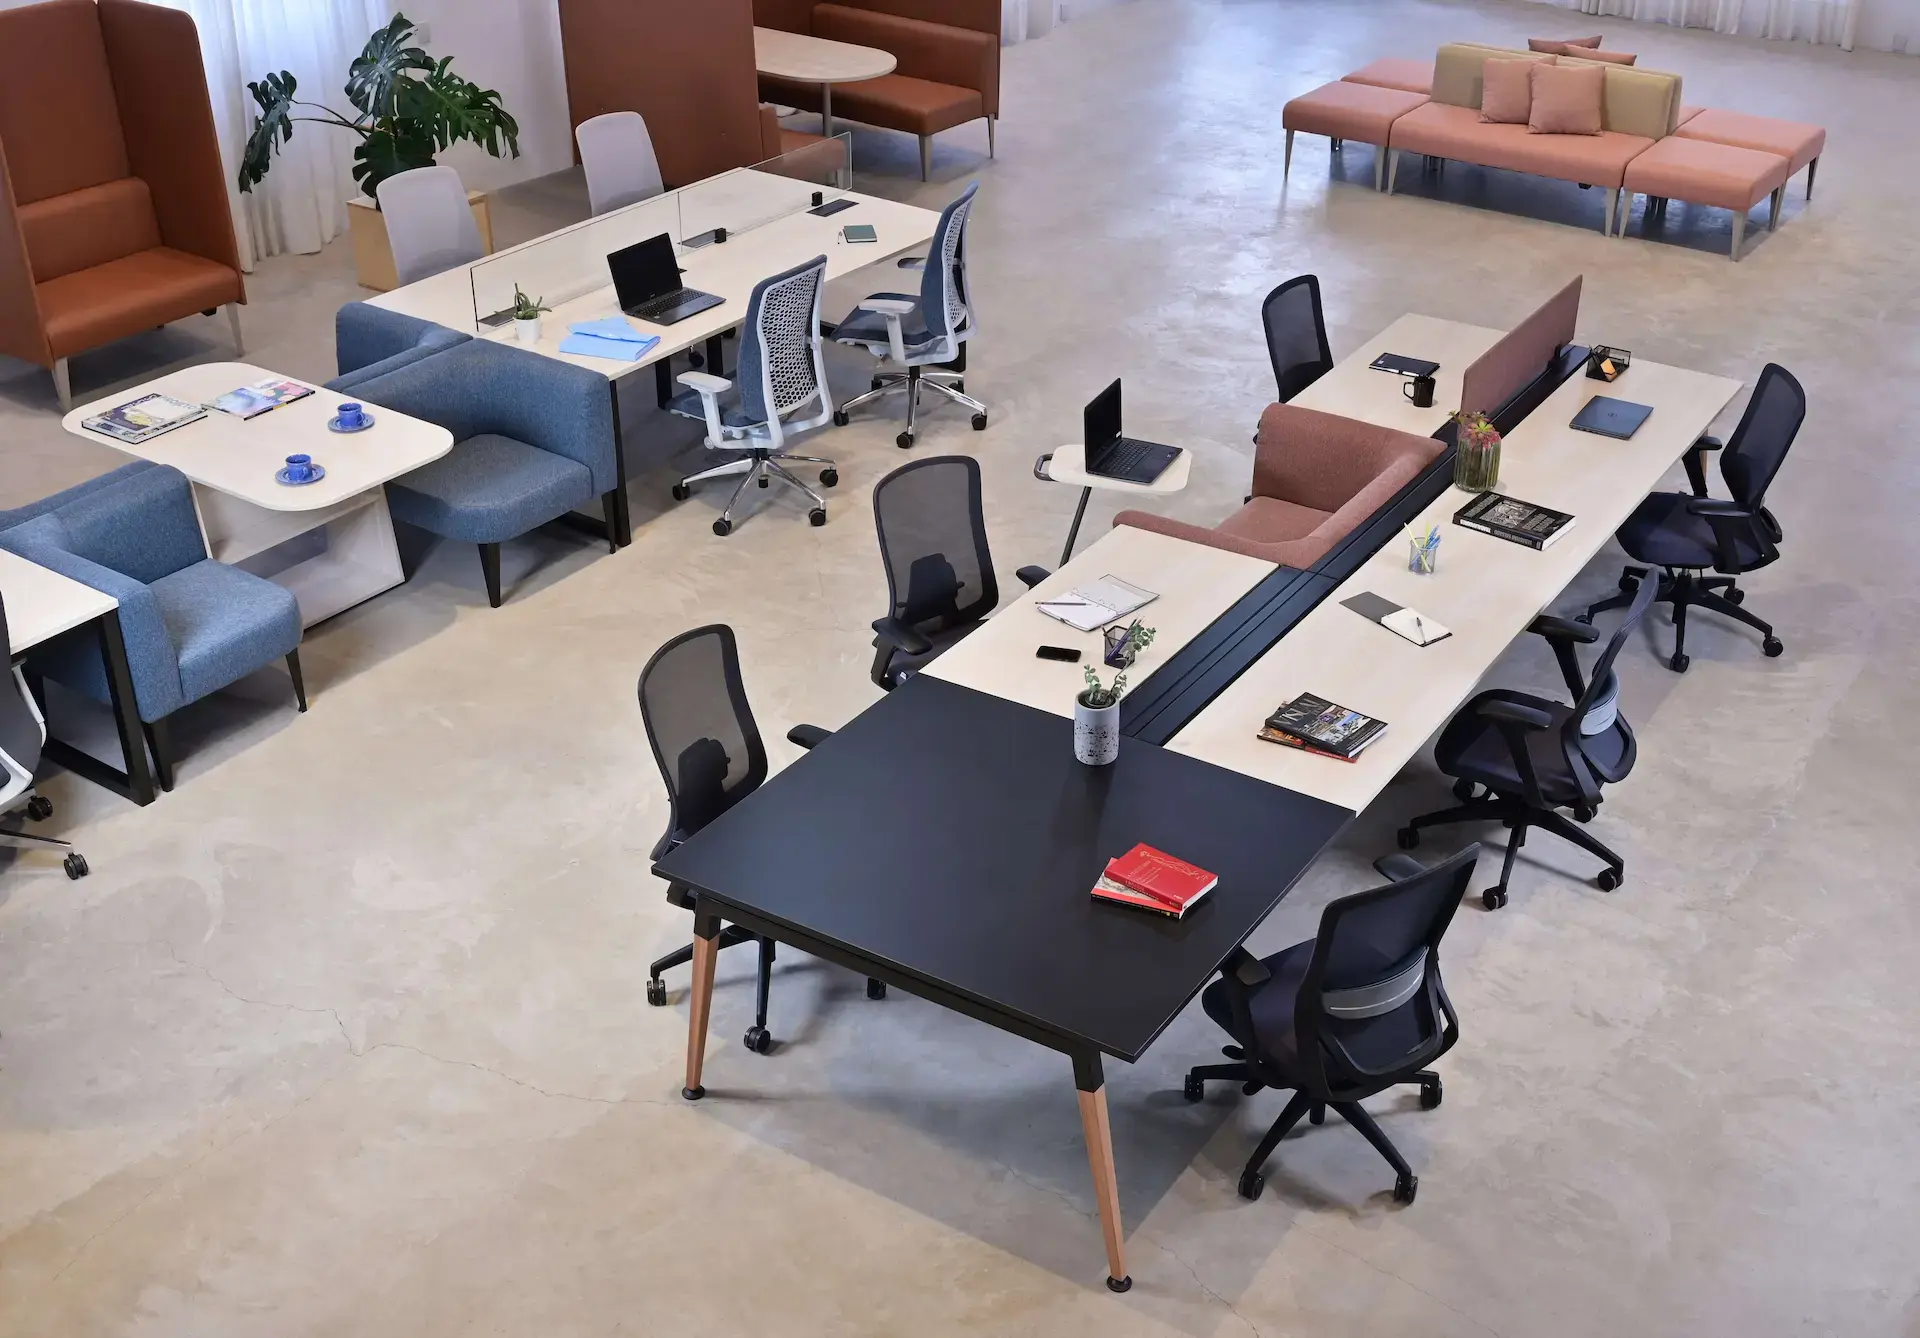 Escritório aberto com mesas e cadeiras organizadas para a colaboração.